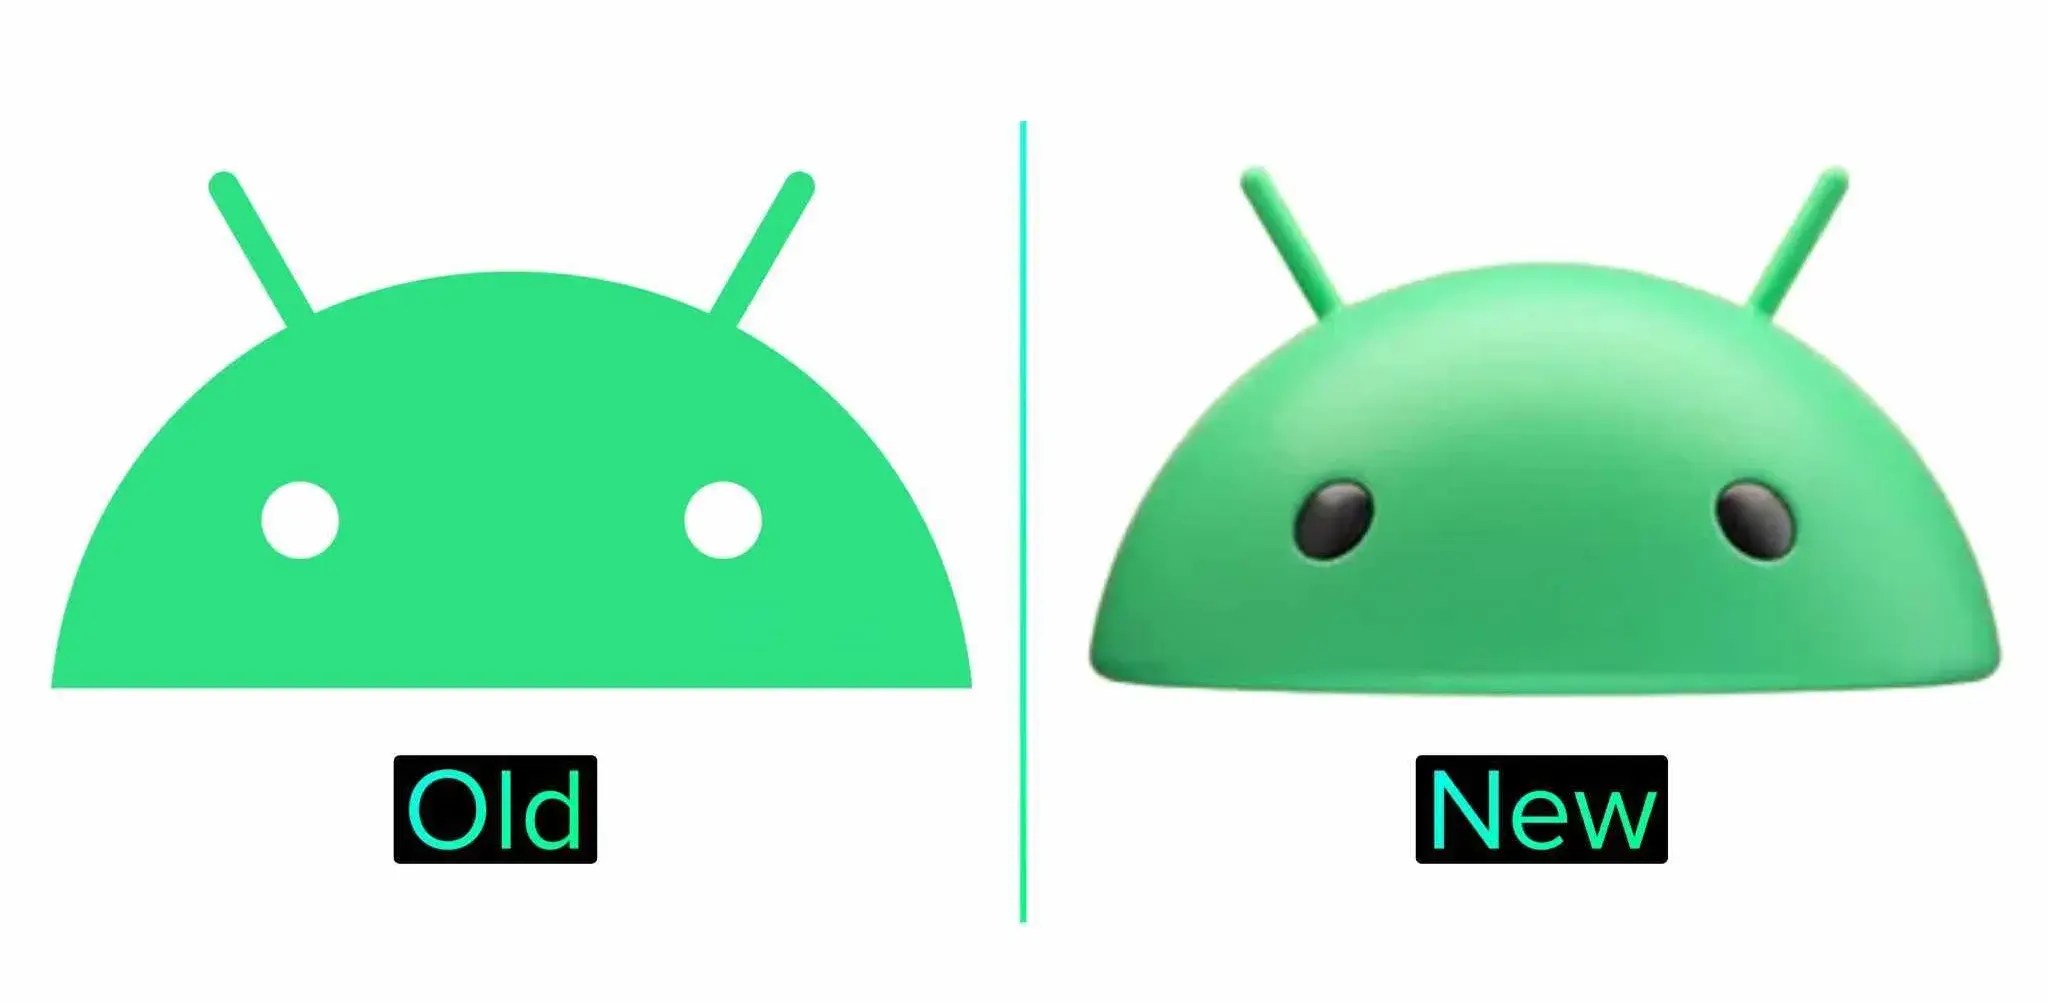 Logo Android Baru